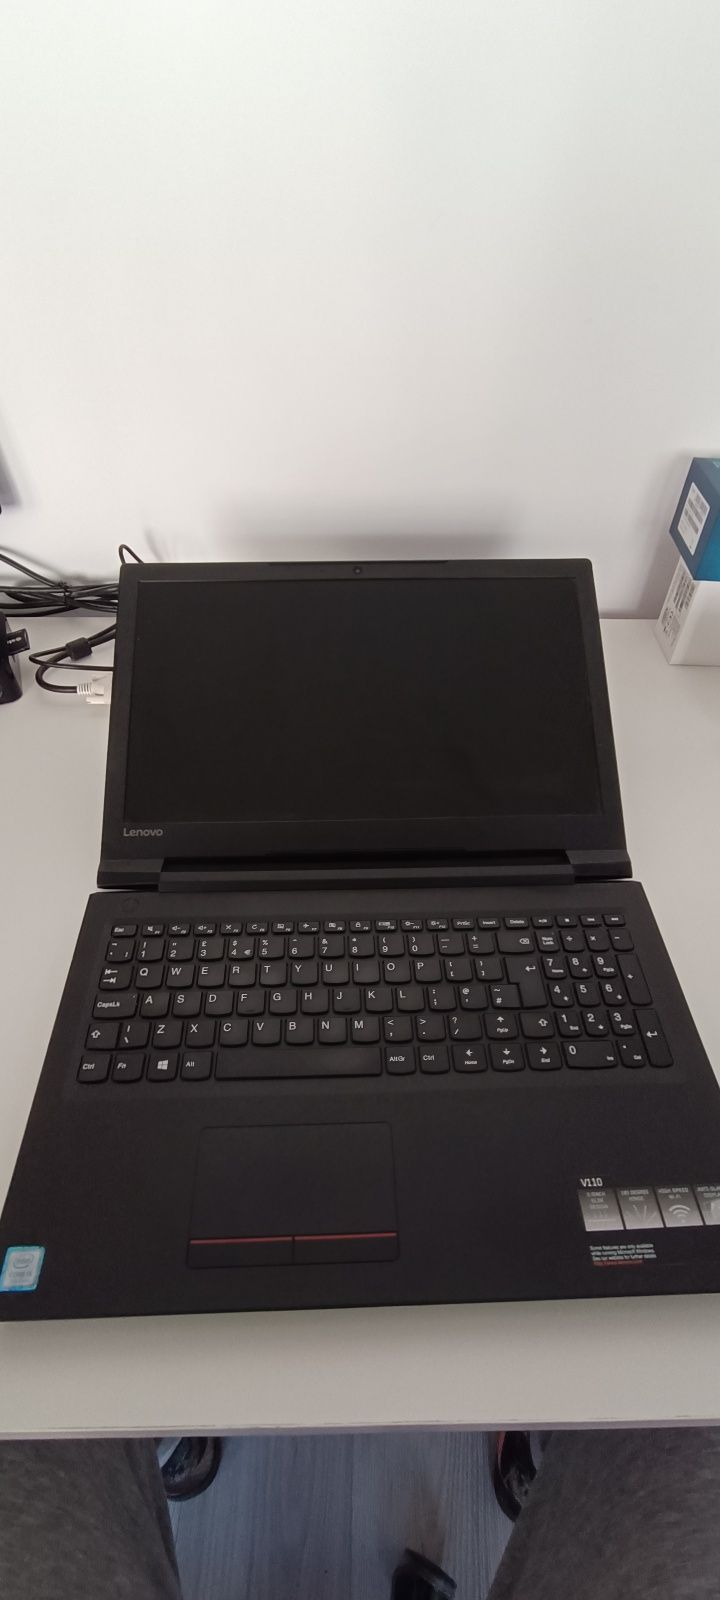 Laptop Lenovo V110-15IKB i5-7200U 8Gb/256 SSD